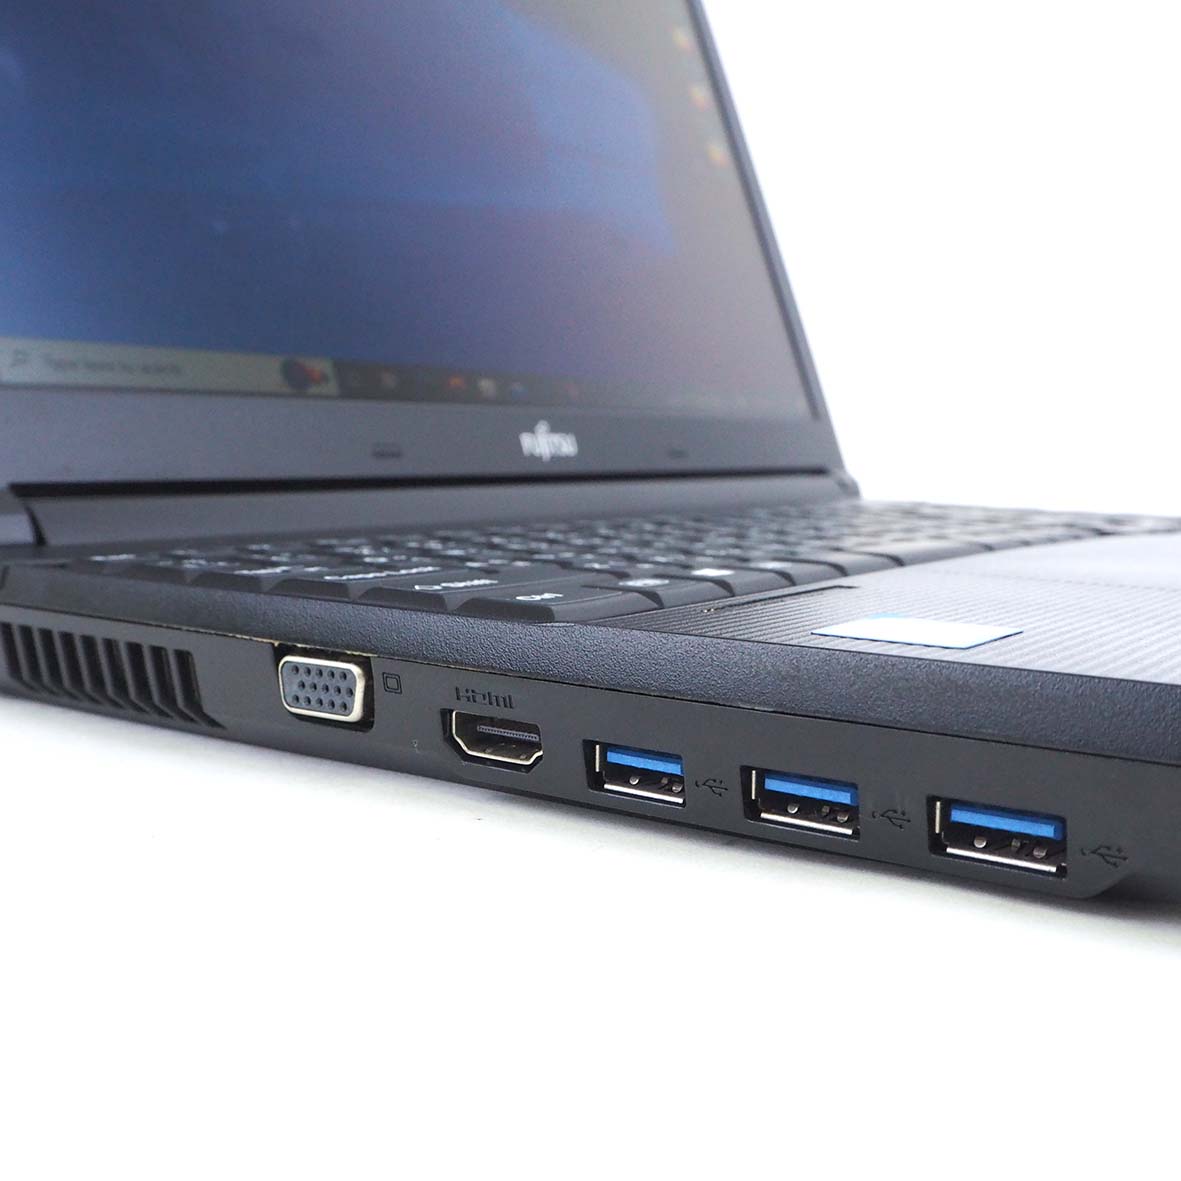 มุมมองเพิ่มเติมของสินค้า โน๊ตบุ๊ค Fu Lifebook A577/S Core i5 Gen 7 RAM 8 SSD 128 GB ขนาด 15.6 นิ้ว คีย์บอร์ดแยก มีกล้องหน้า สเปคแรง เร็ว เล่นเกมได้ Refhed laptop used notebook มีประกัน by Totalsol